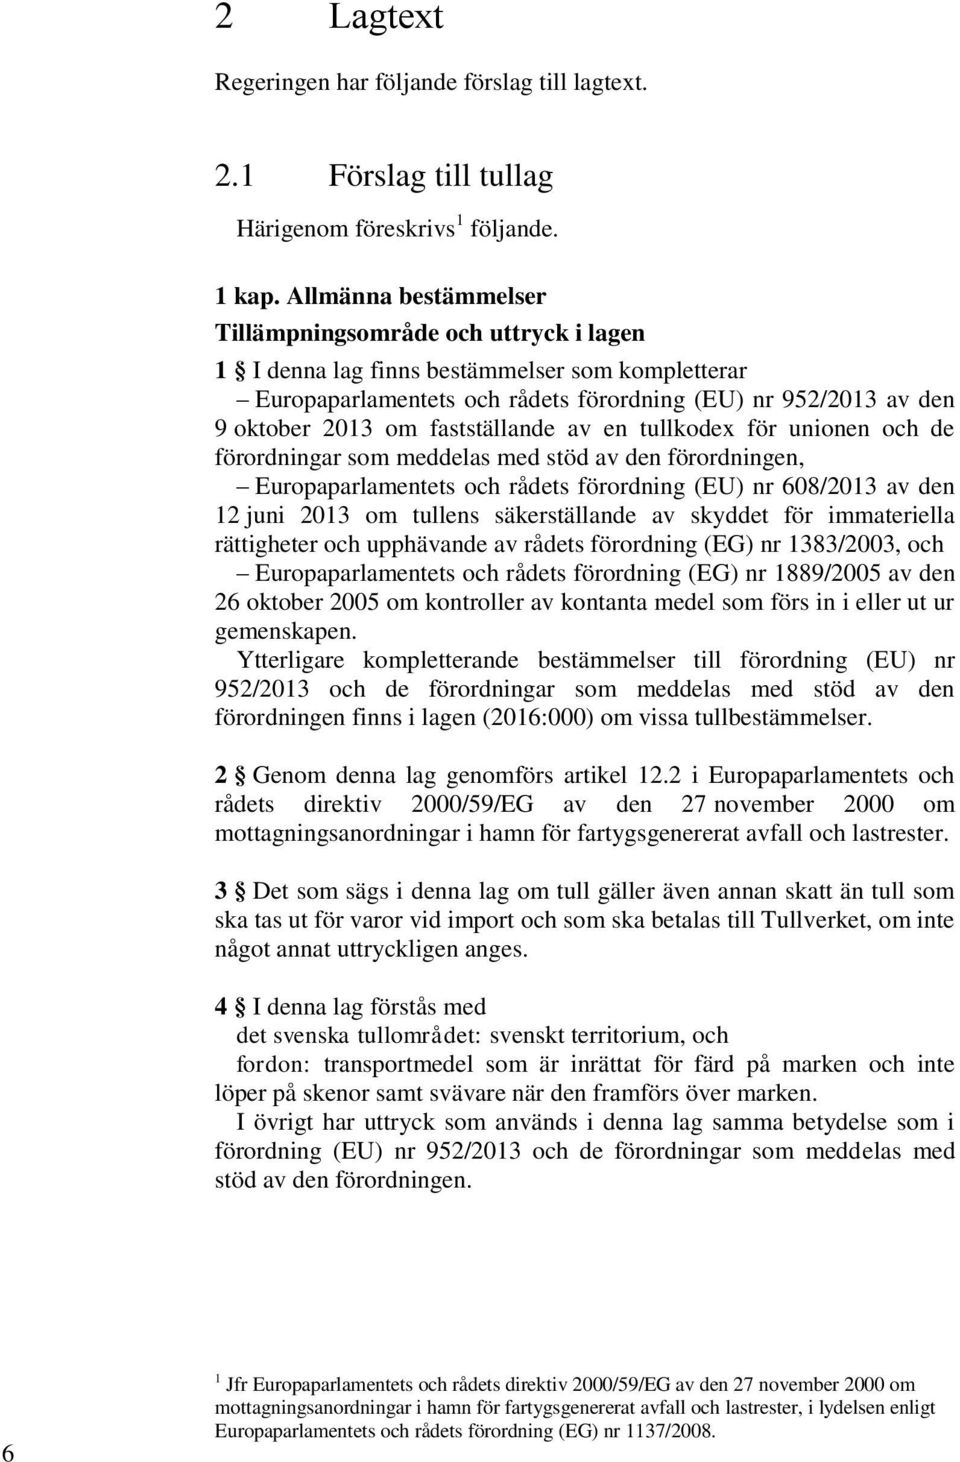 fastställande av en tullkodex för unionen och de förordningar som meddelas med stöd av den förordningen, Europaparlamentets och rådets förordning (EU) nr 608/2013 av den 12 juni 2013 om tullens